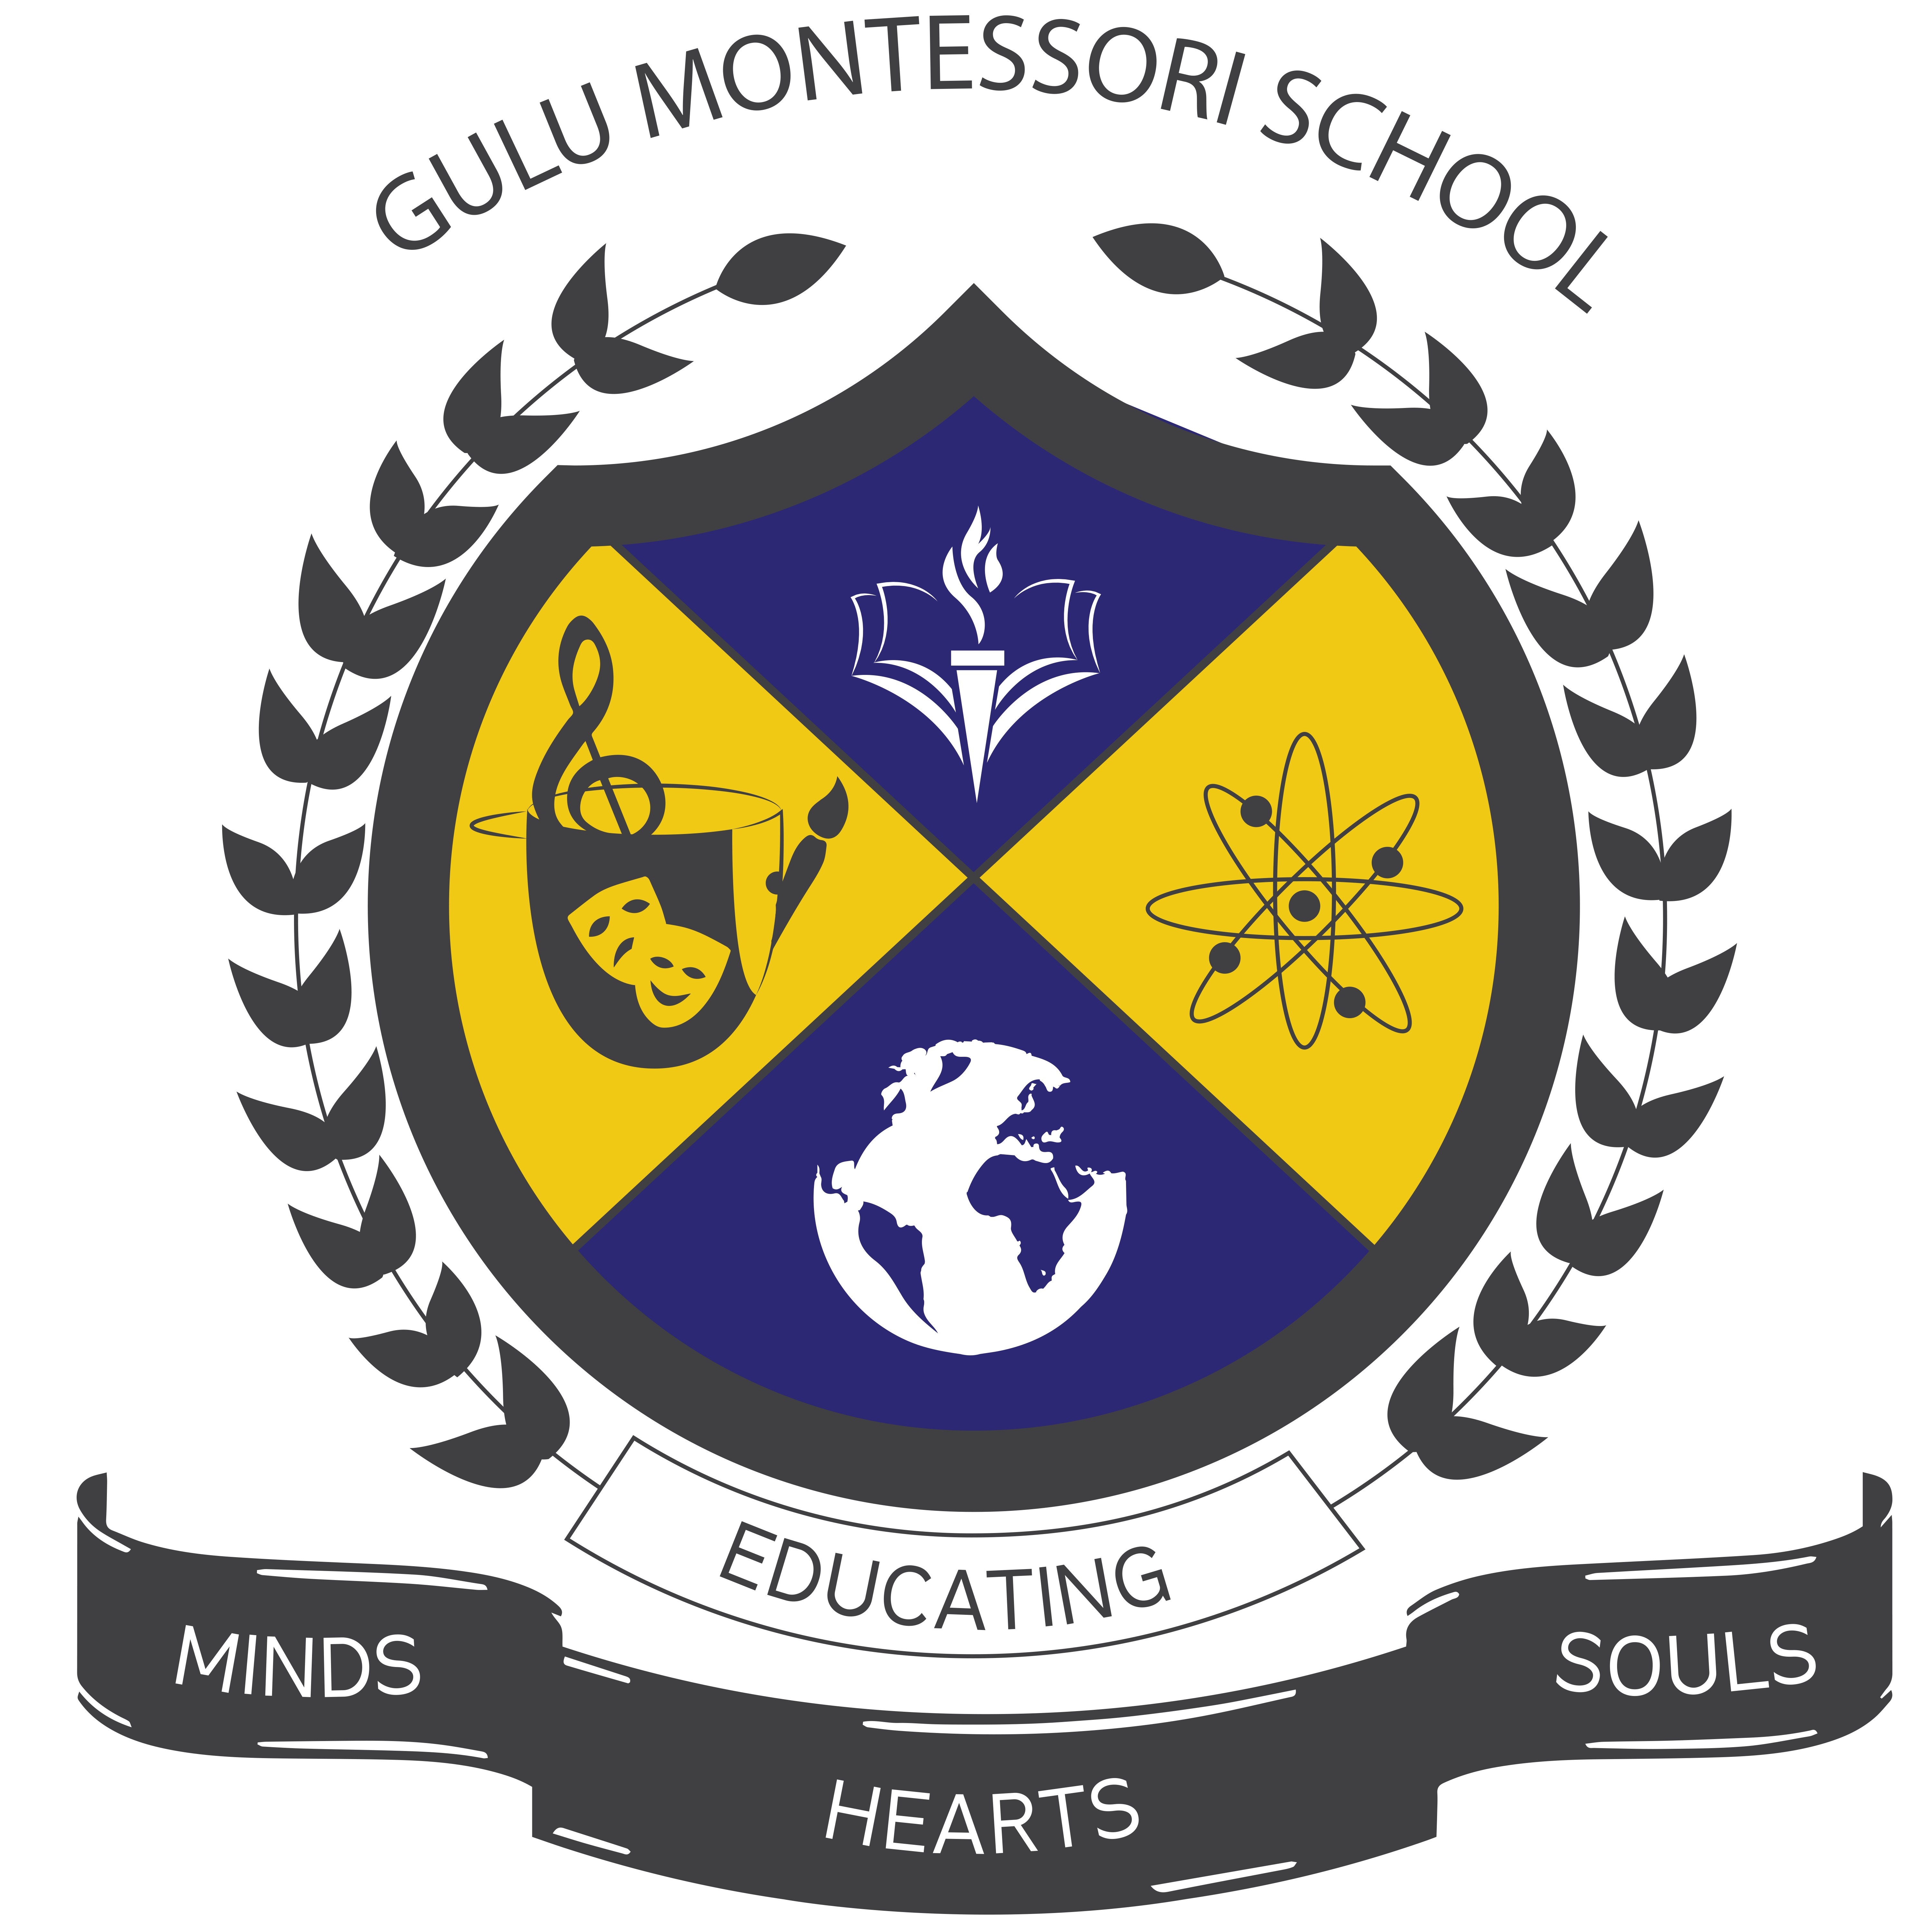 Gulu Montessori School